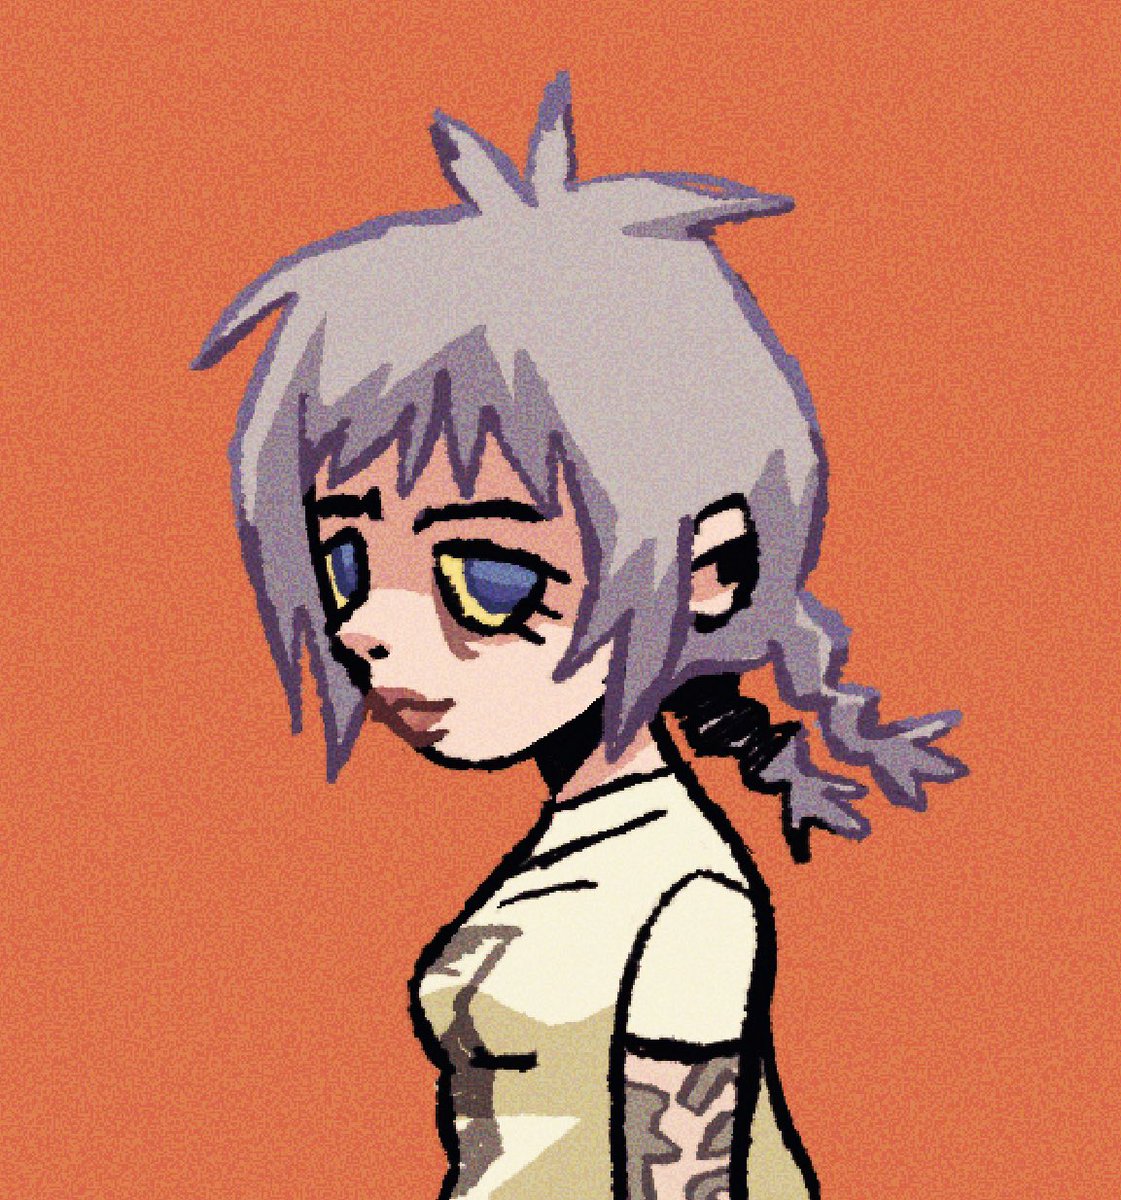 1girl solo braid simple background orange background shirt tattoo  illustration images